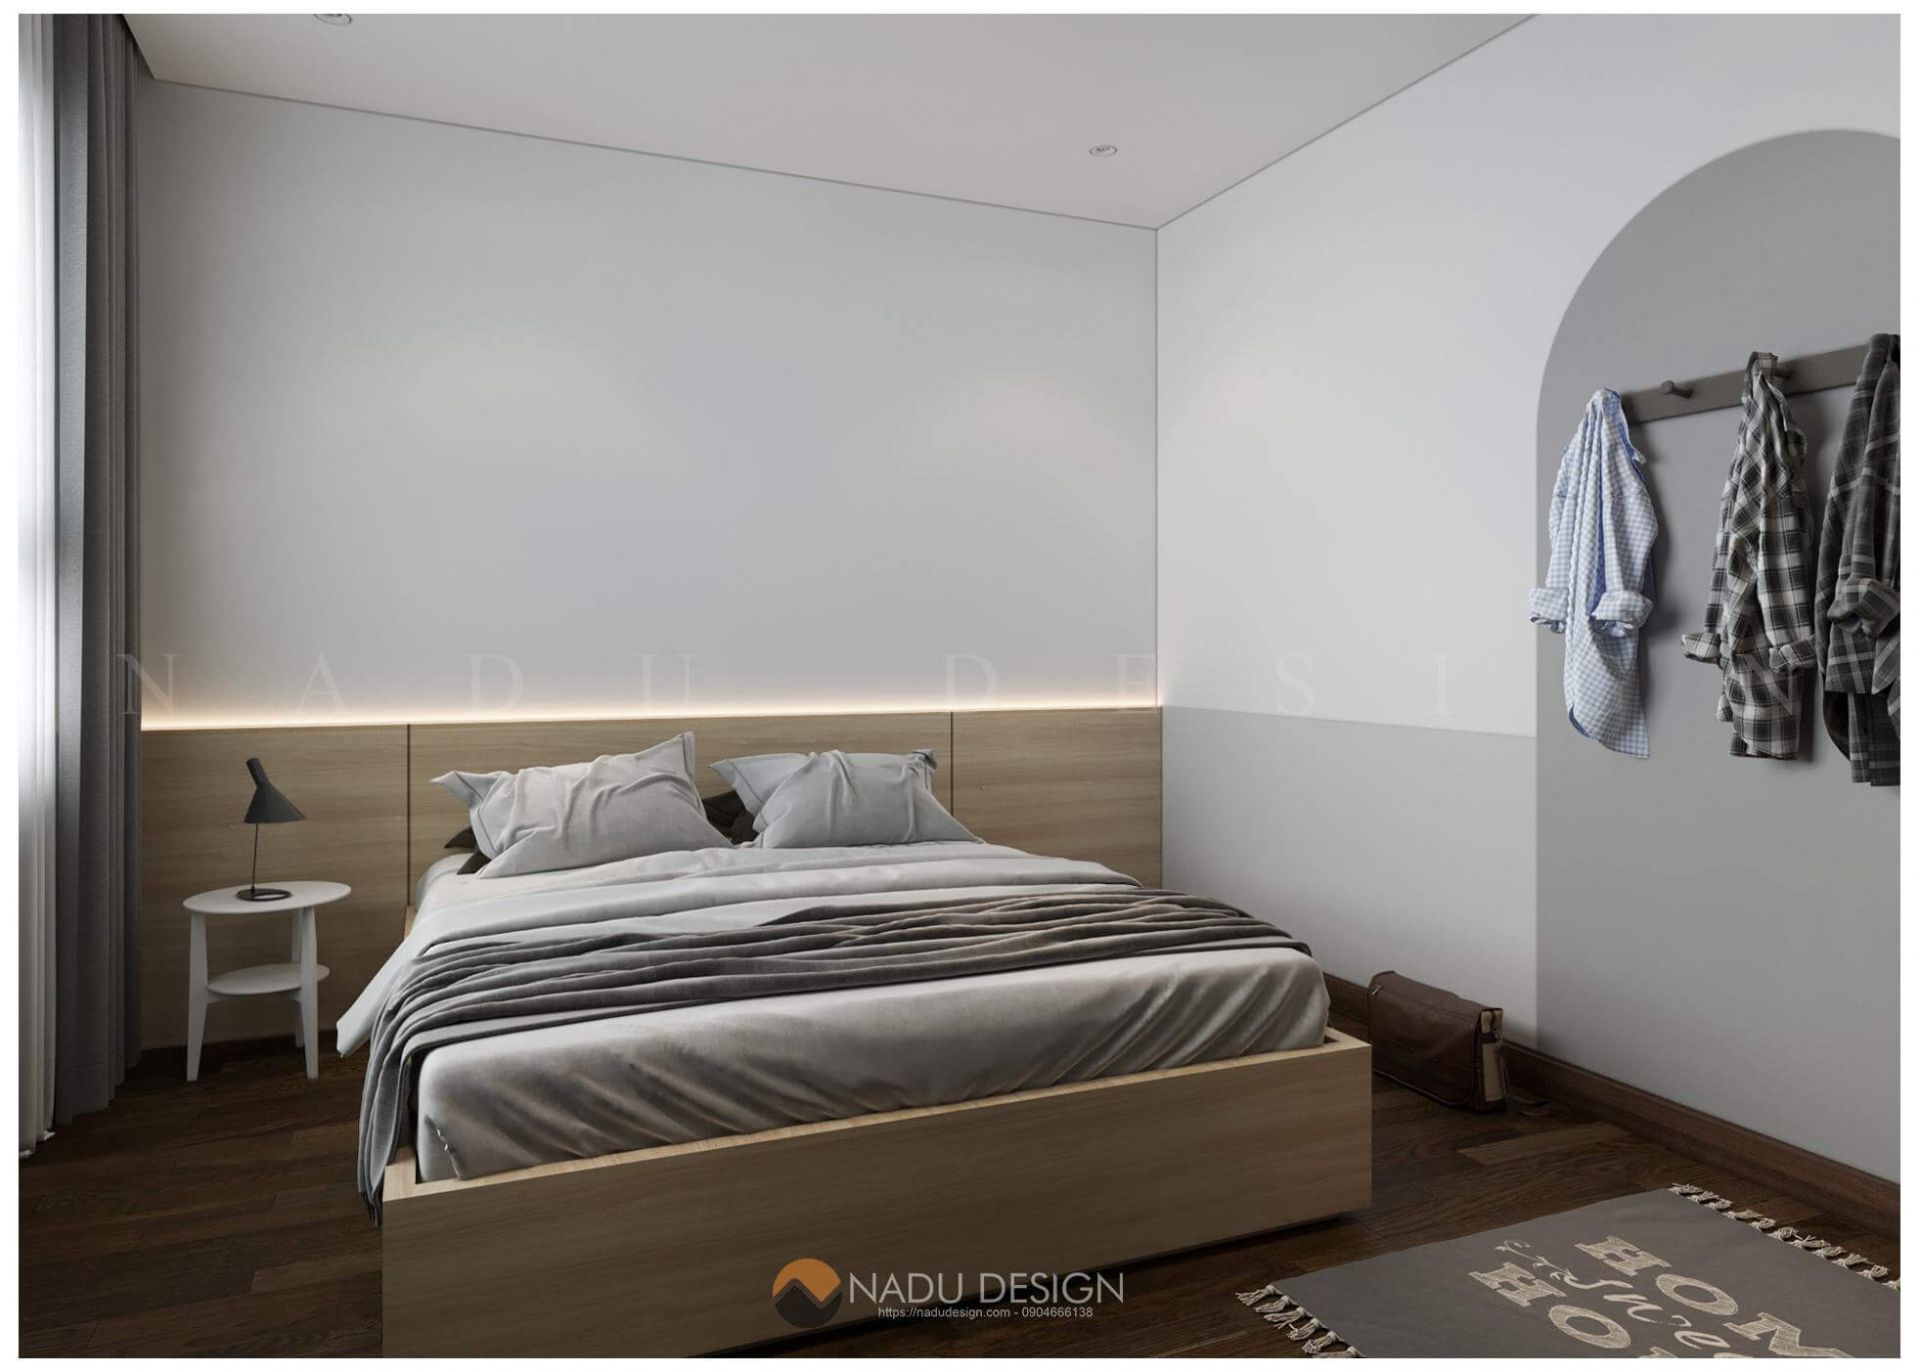 Với thiết kế phòng ngủ hiện đại sử dụng công nghệ tiên tiến, chỉ trong 25m2 bạn sẽ có một không gian sống đầy đủ và tiện nghi cho cuộc sống của mình. Còn chờ gì nữa, hãy click ngay vào hình ảnh để khám phá thêm những điều tuyệt vời mà nó đem lại cho ngôi nhà của bạn!